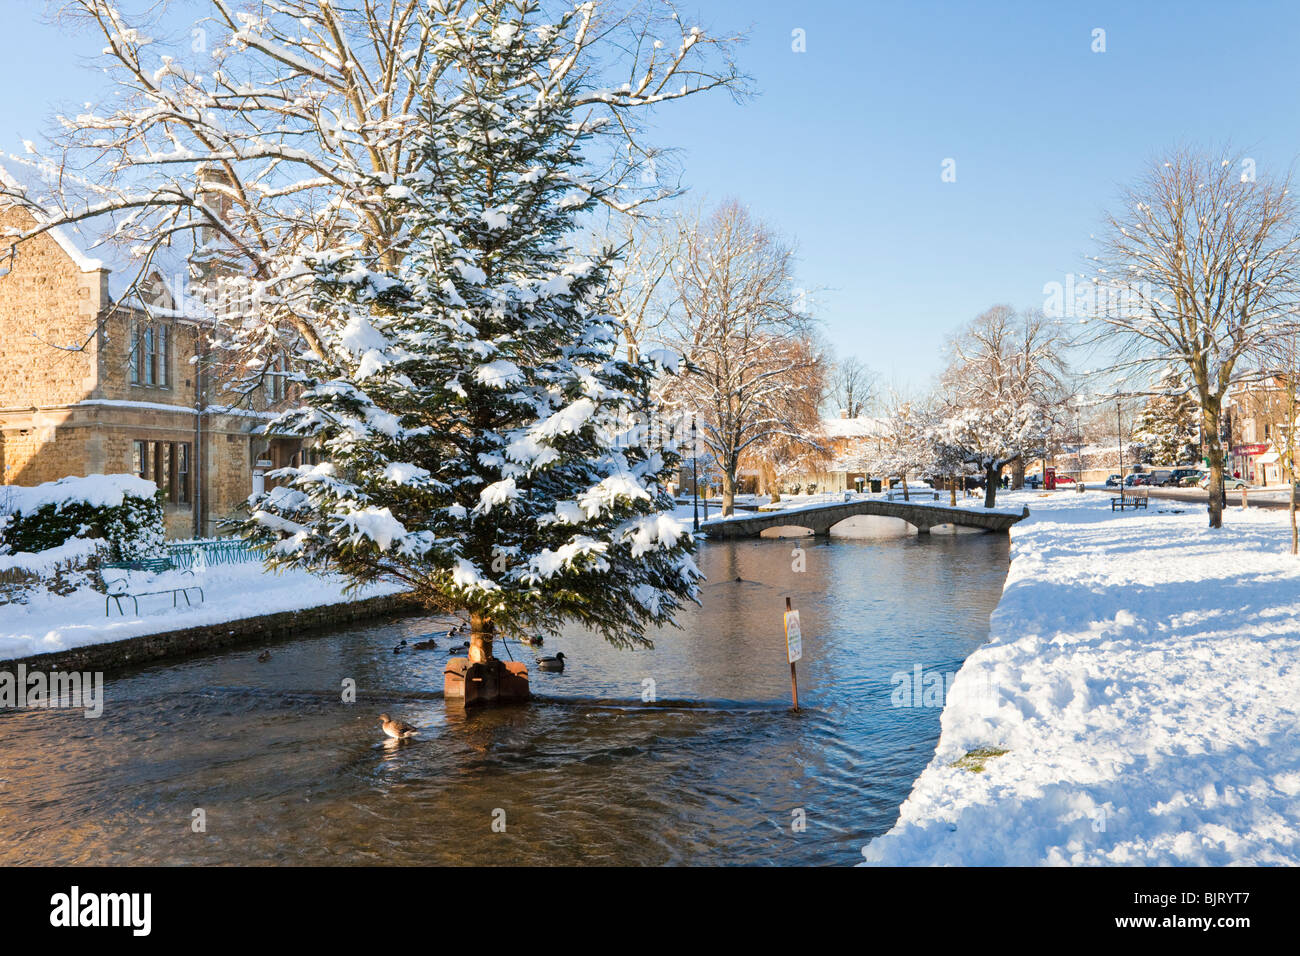 Winterschnee auf dem Weihnachtsbaum im River Windrush im Cotswold Dorf Bourton on the Water, Gloucestershire UK Stockfoto